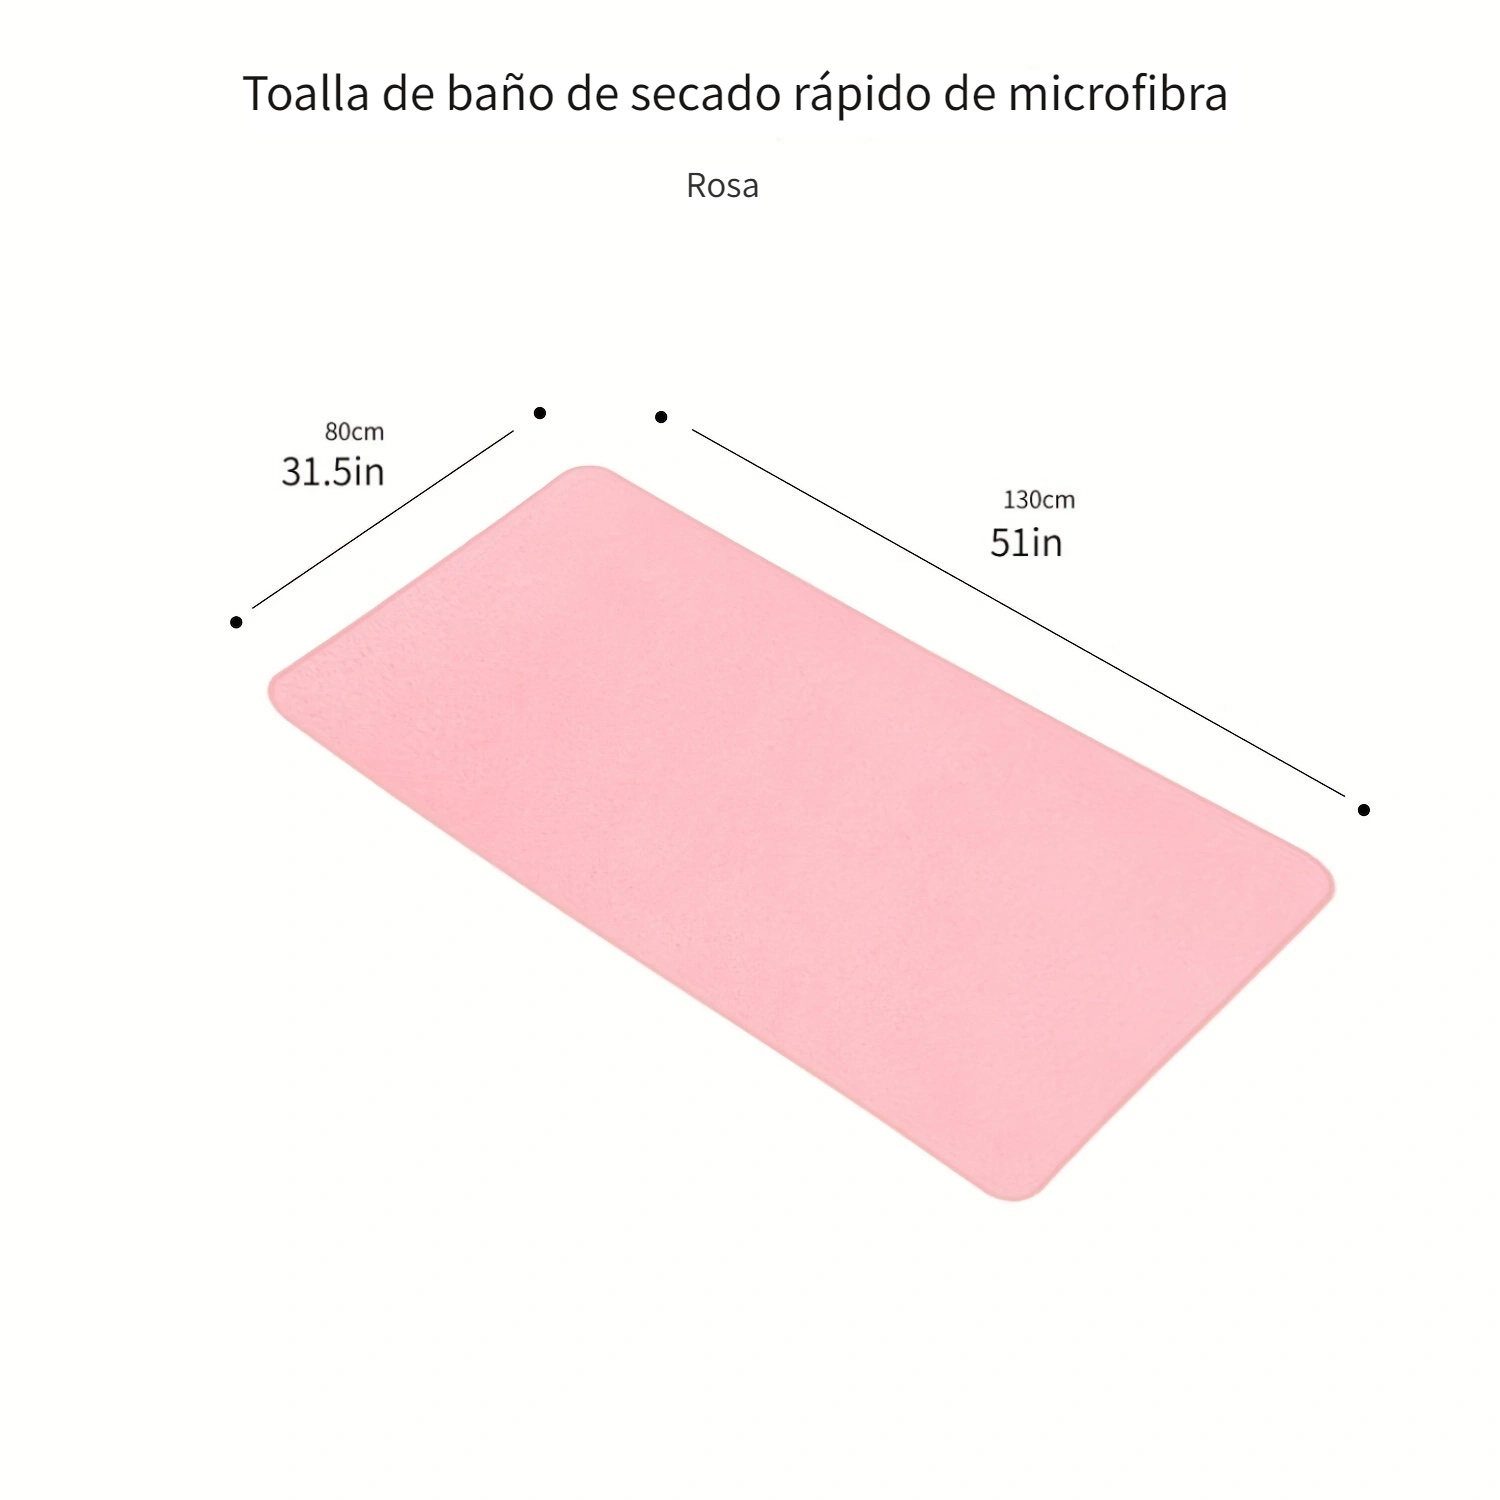 1 pieza de toalla de baño grande rectangular de fibra de poliéster rosa,  33,84 * 67,3 pulgadas, adulto doméstico masculino y femenino, toalla de baño  para niños, secado rápido y absorción de